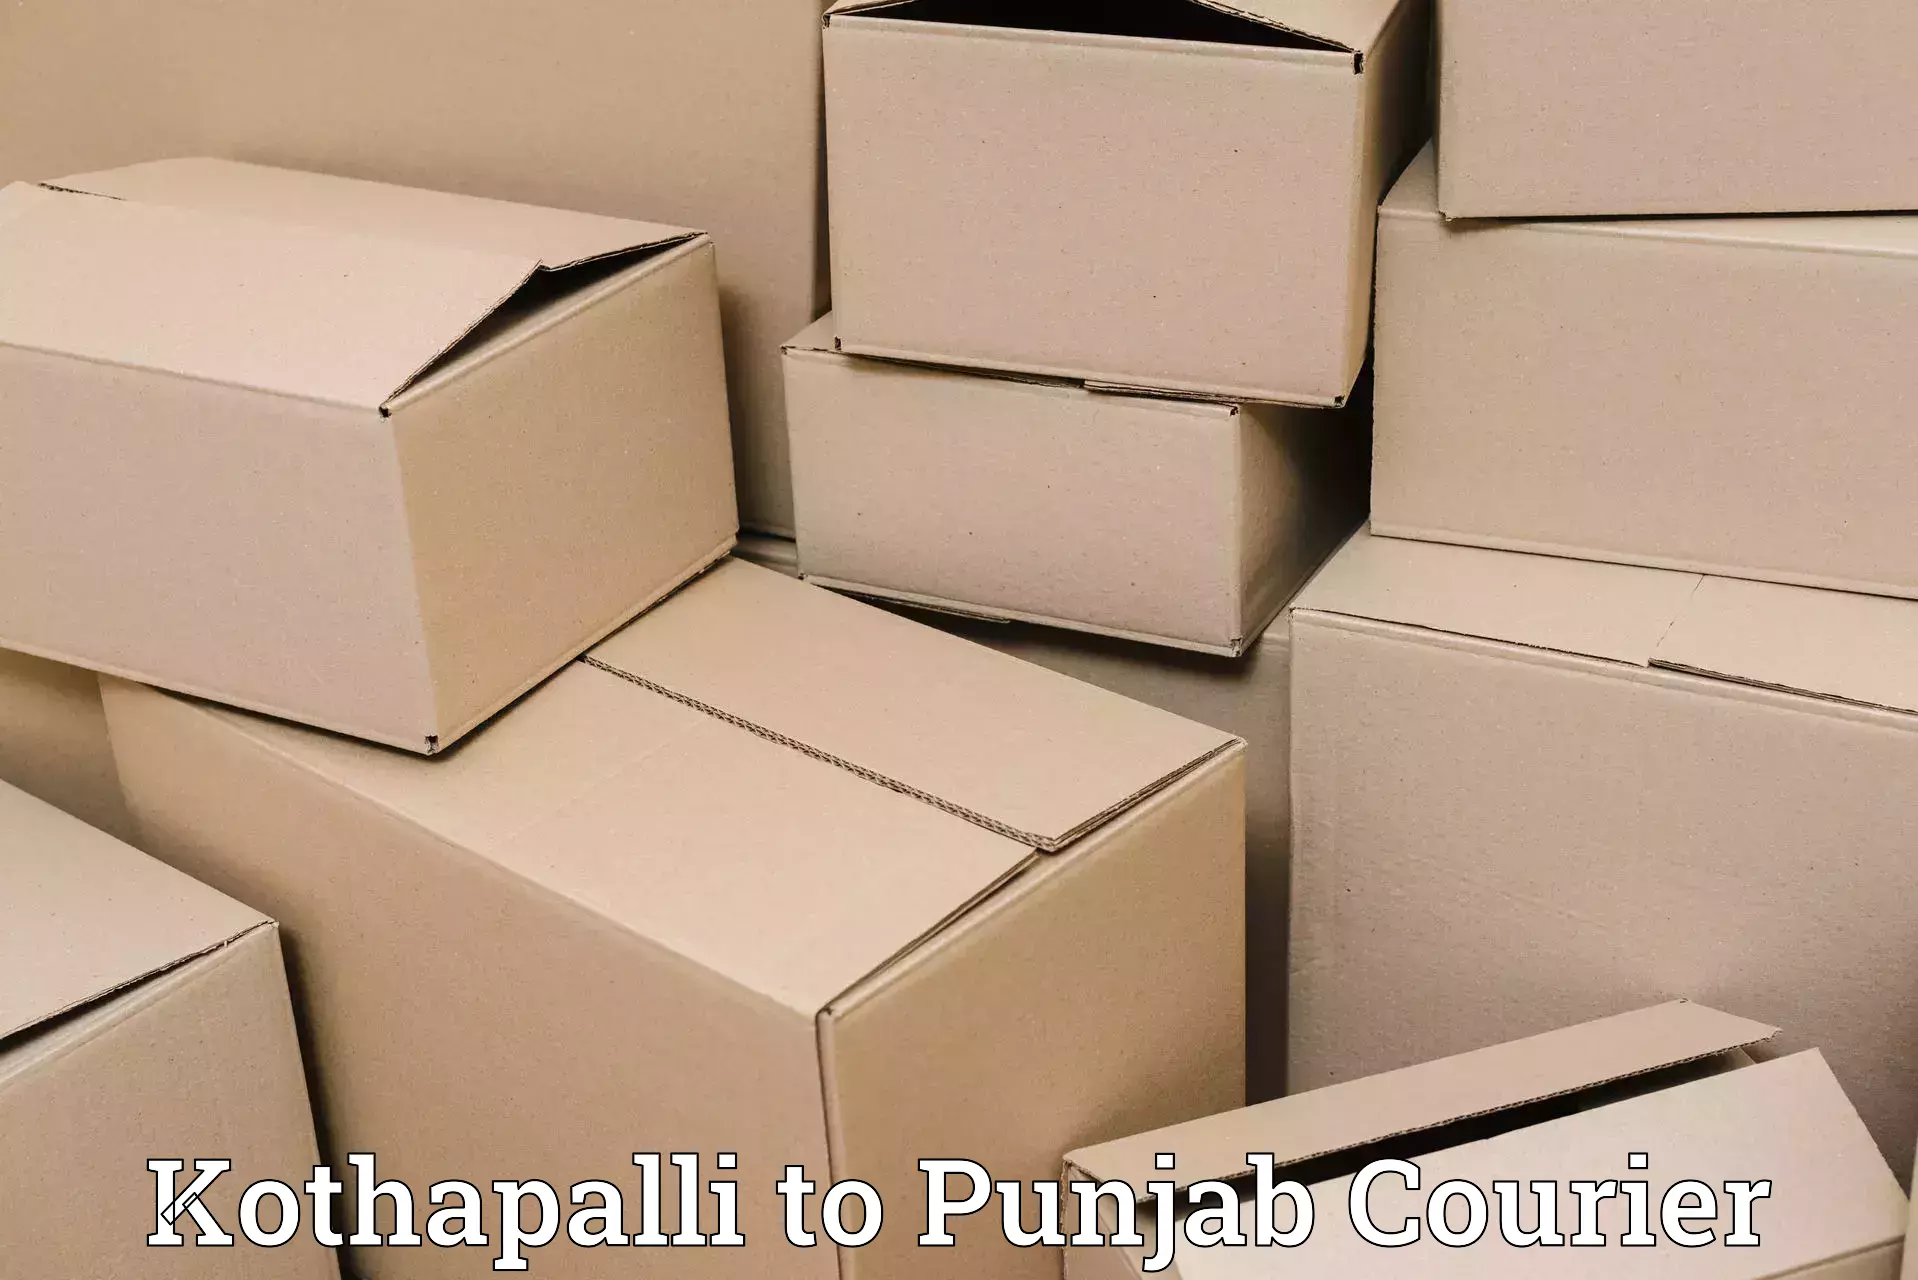 Courier dispatch services Kothapalli to Patti Tarn Tara